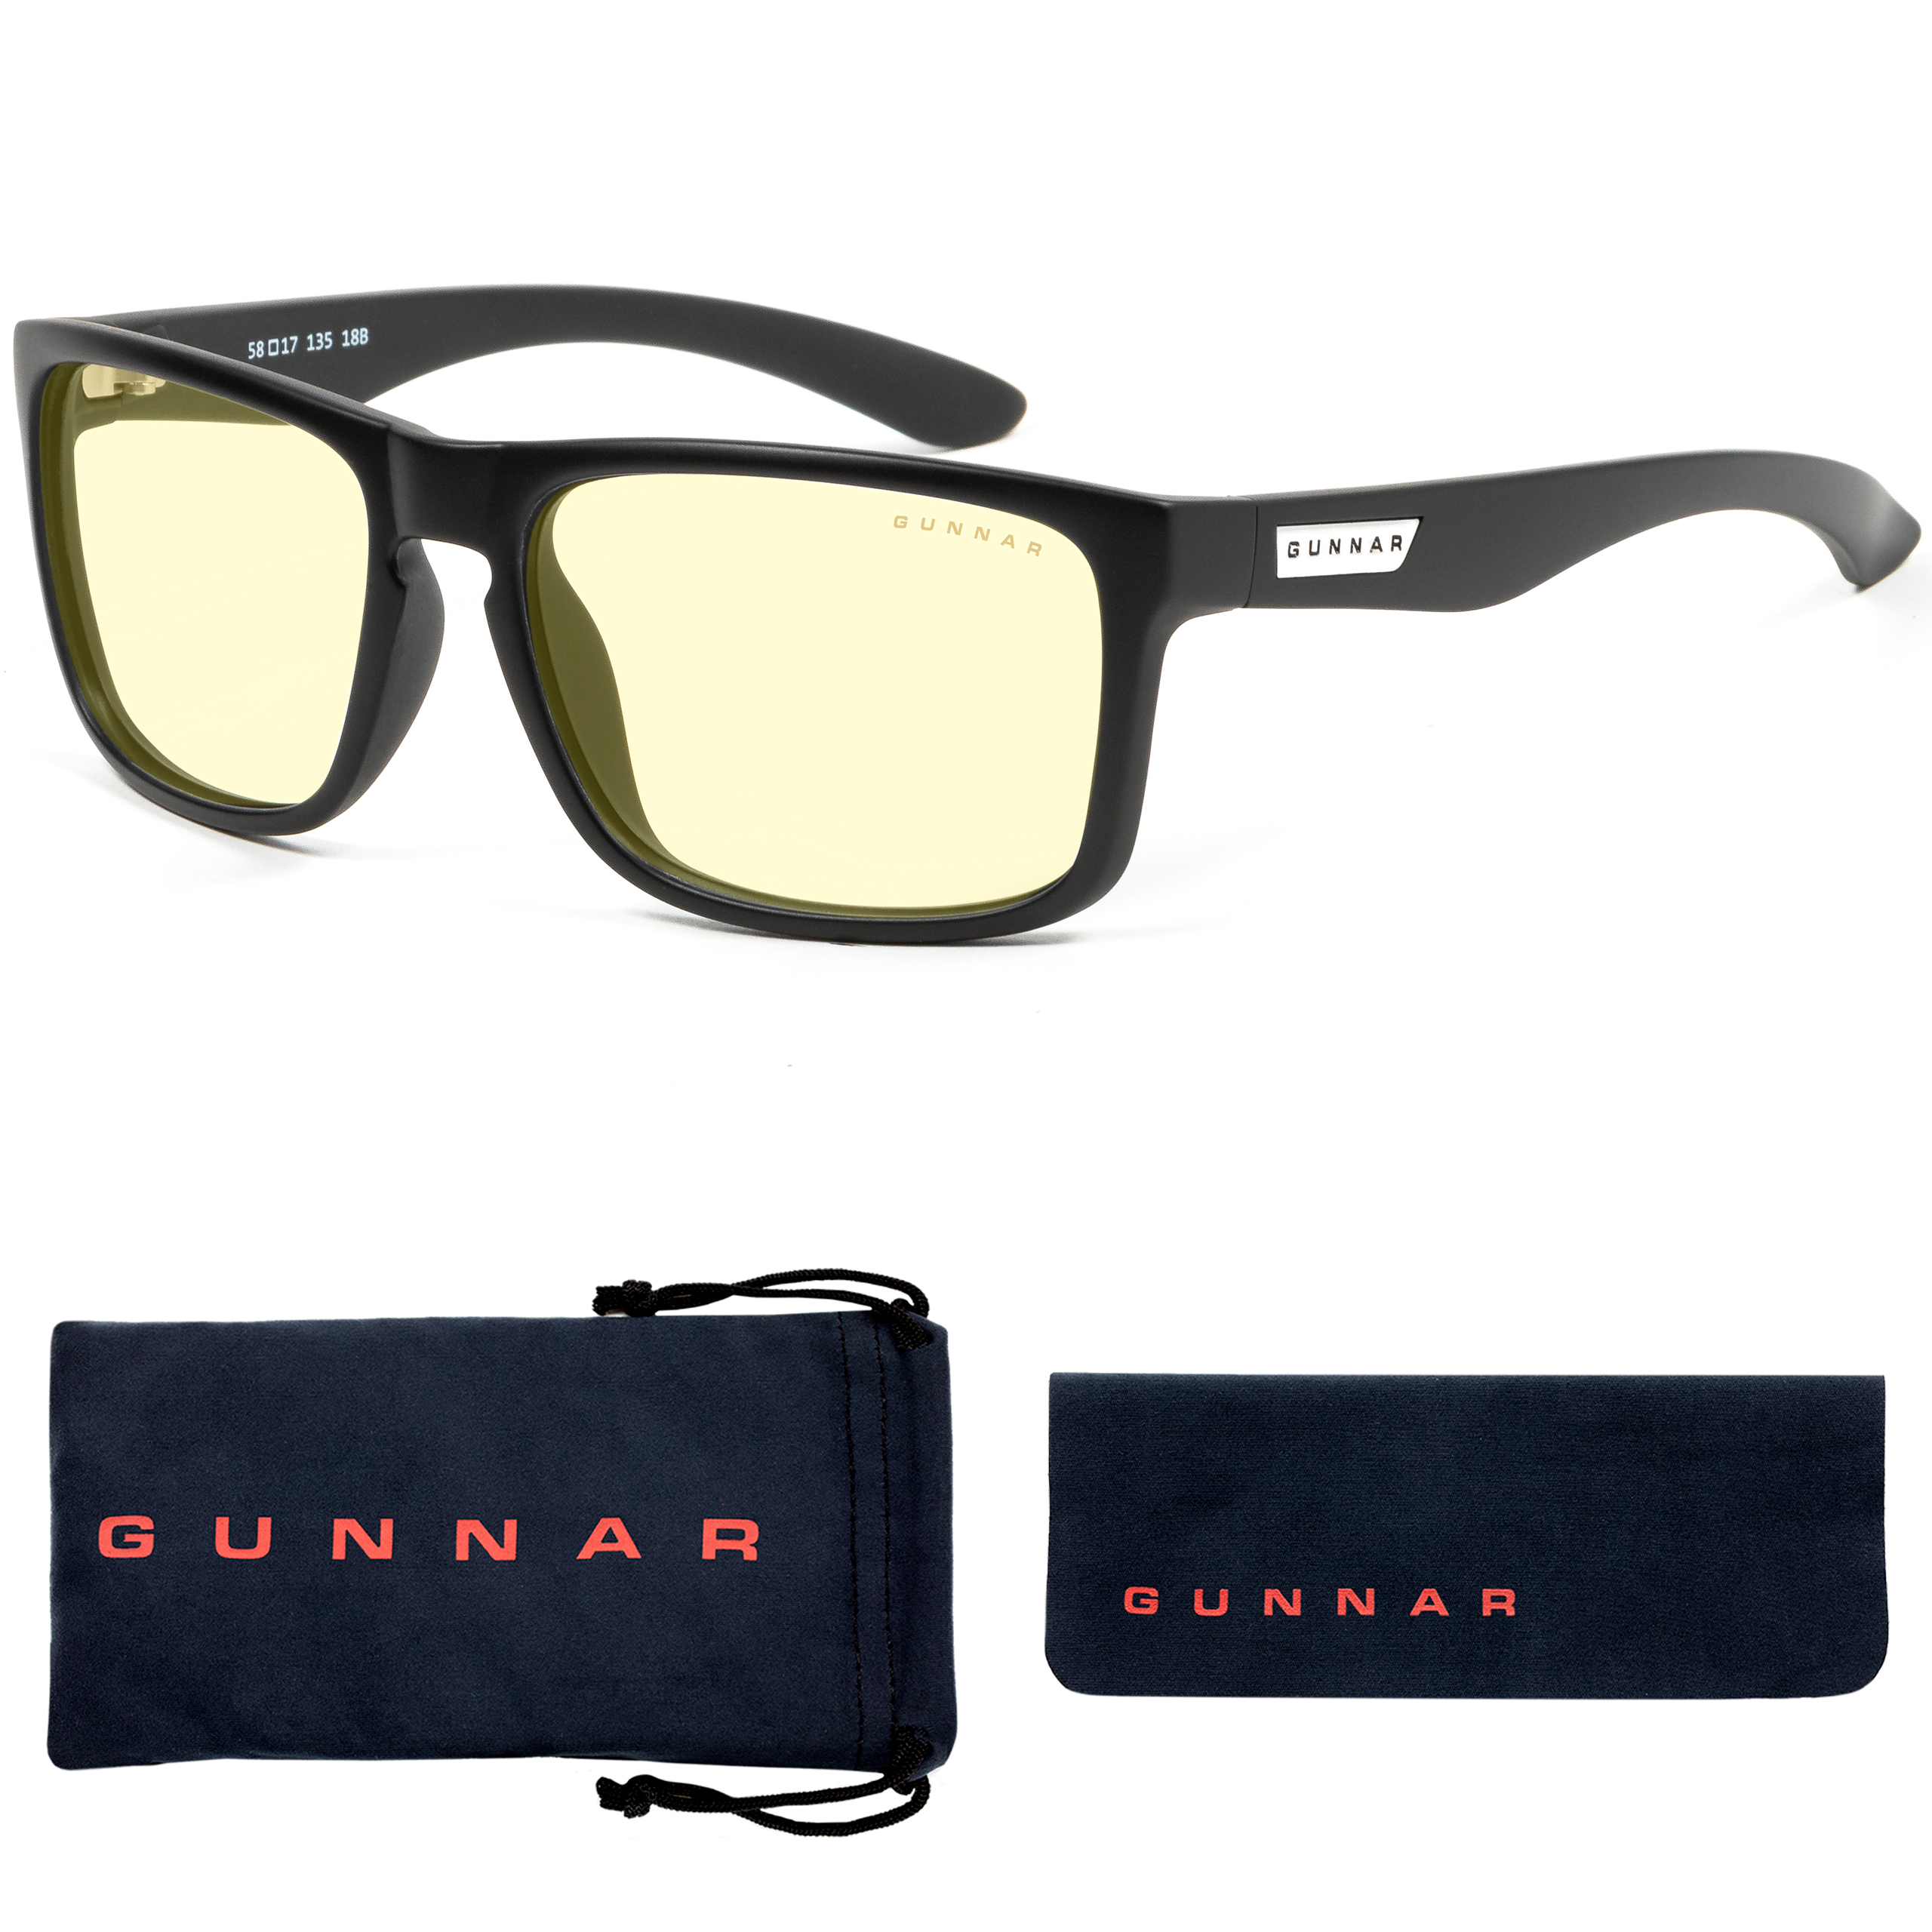 GUNNAR Intercept, Onyx Rahmen, Amber Blaulichtfilter, Premium, Tönung- Gaming Brille Stärke UV-Schutz, + 3.0